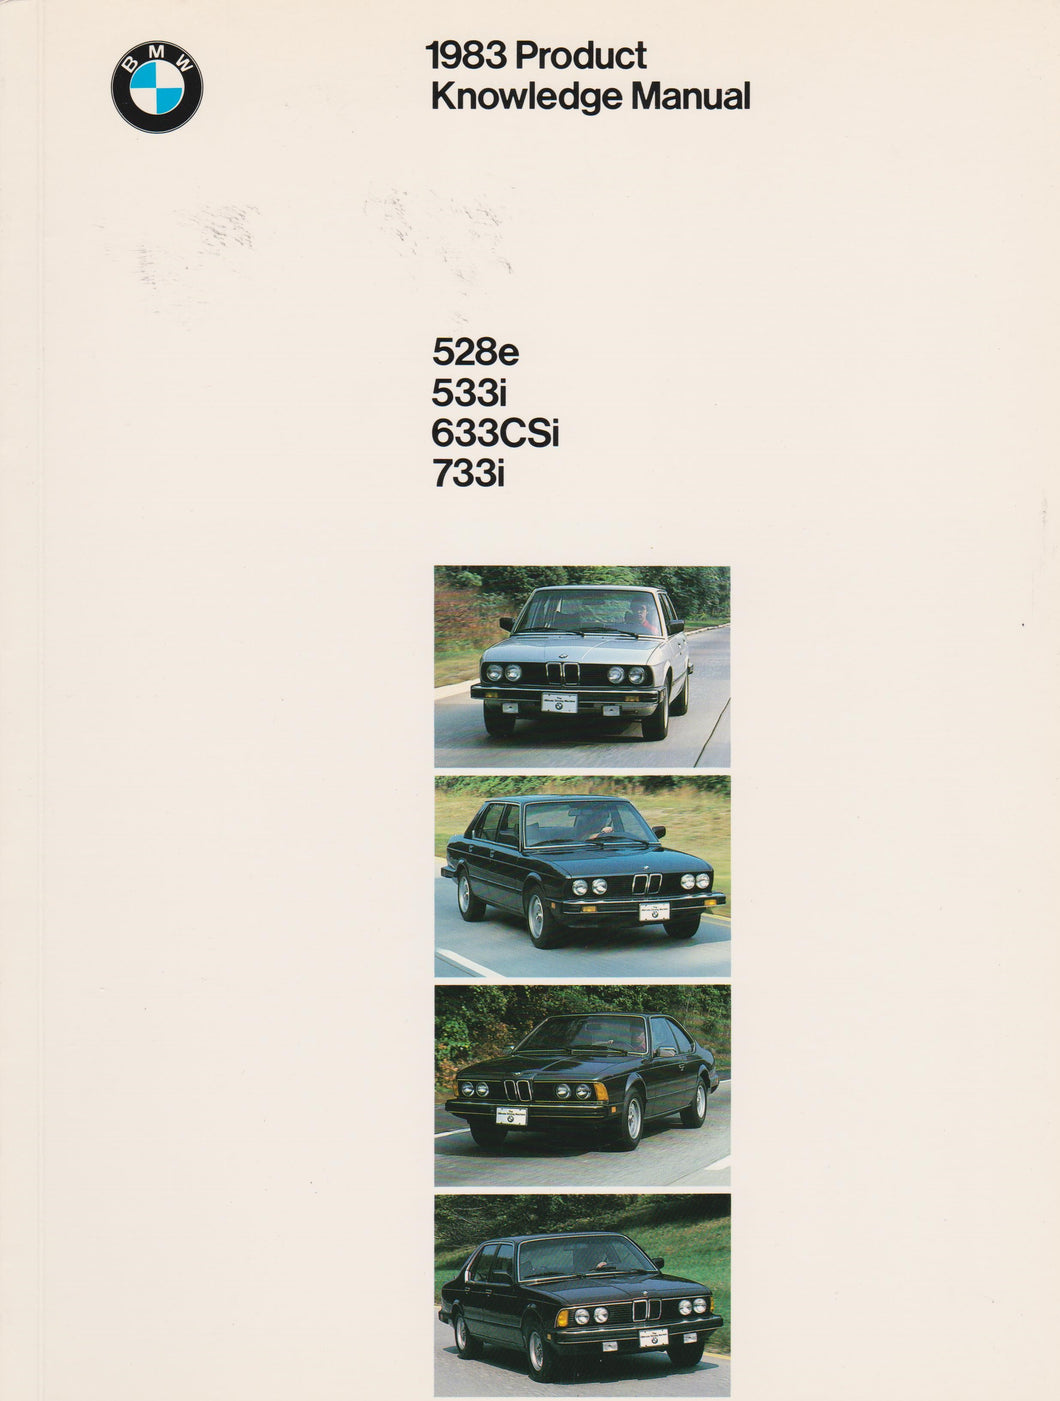 Brochure - 1983 Product Knowledge Manual 528e 533i 633CSi 733i